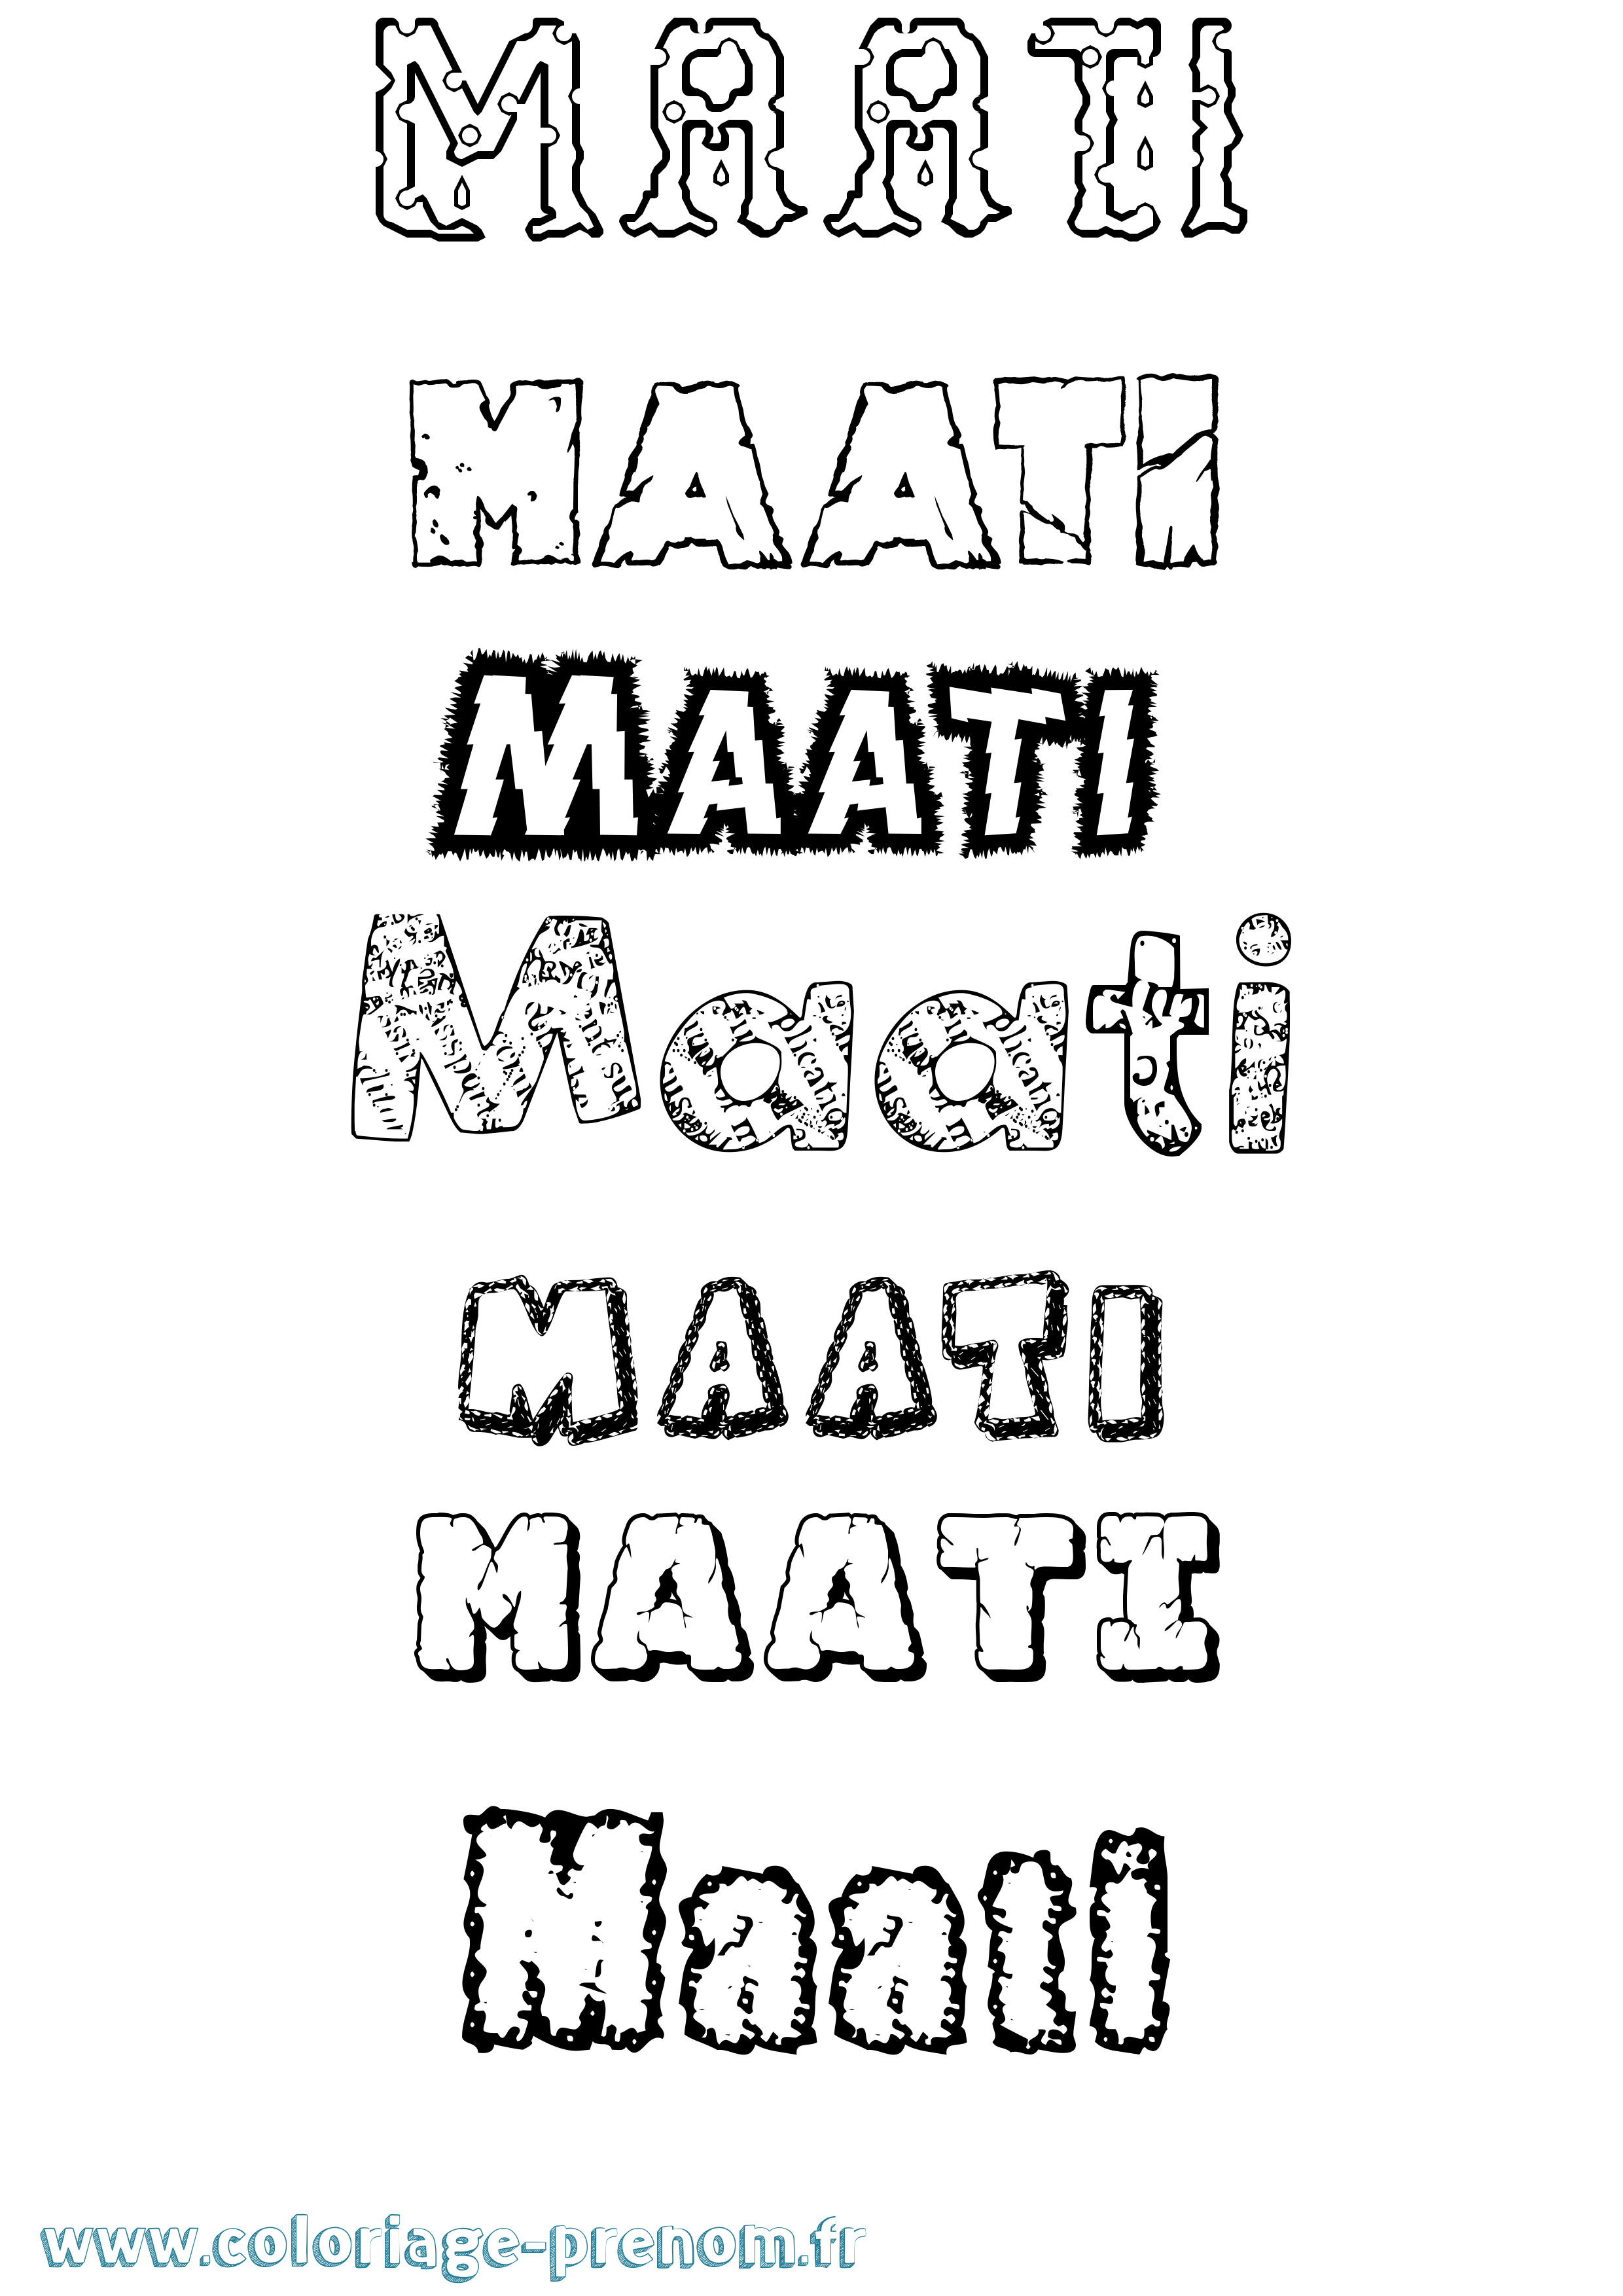 Coloriage prénom Maati Destructuré